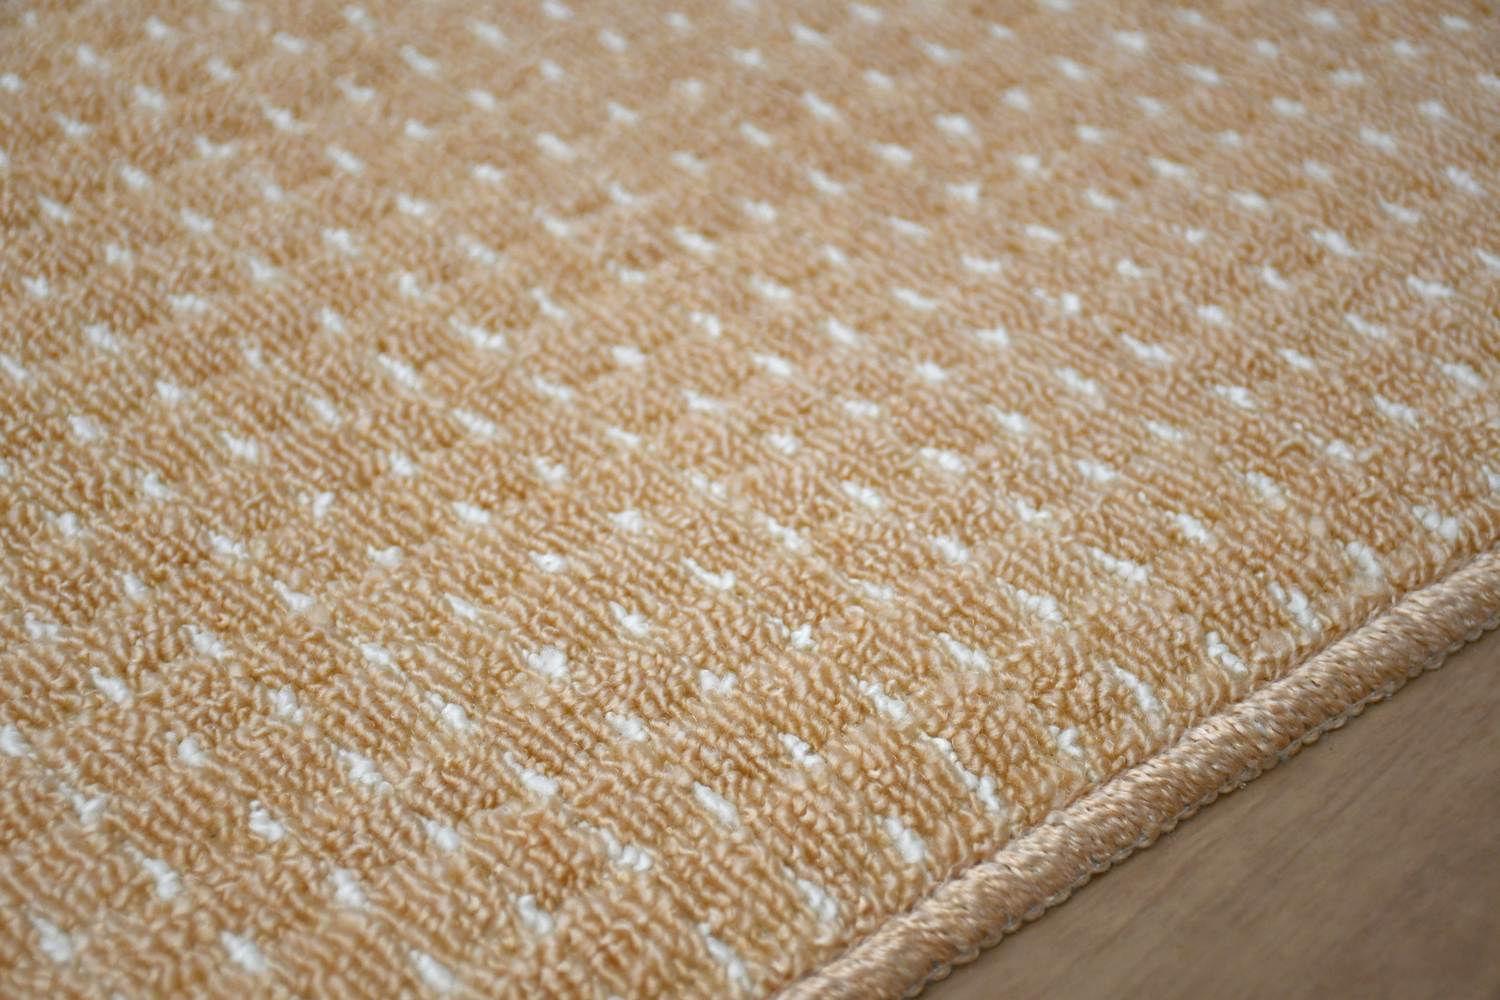 カーペット 6畳 六畳 じゅうたん 絨毯 防ダニ 抗菌 防臭 日本製 国産